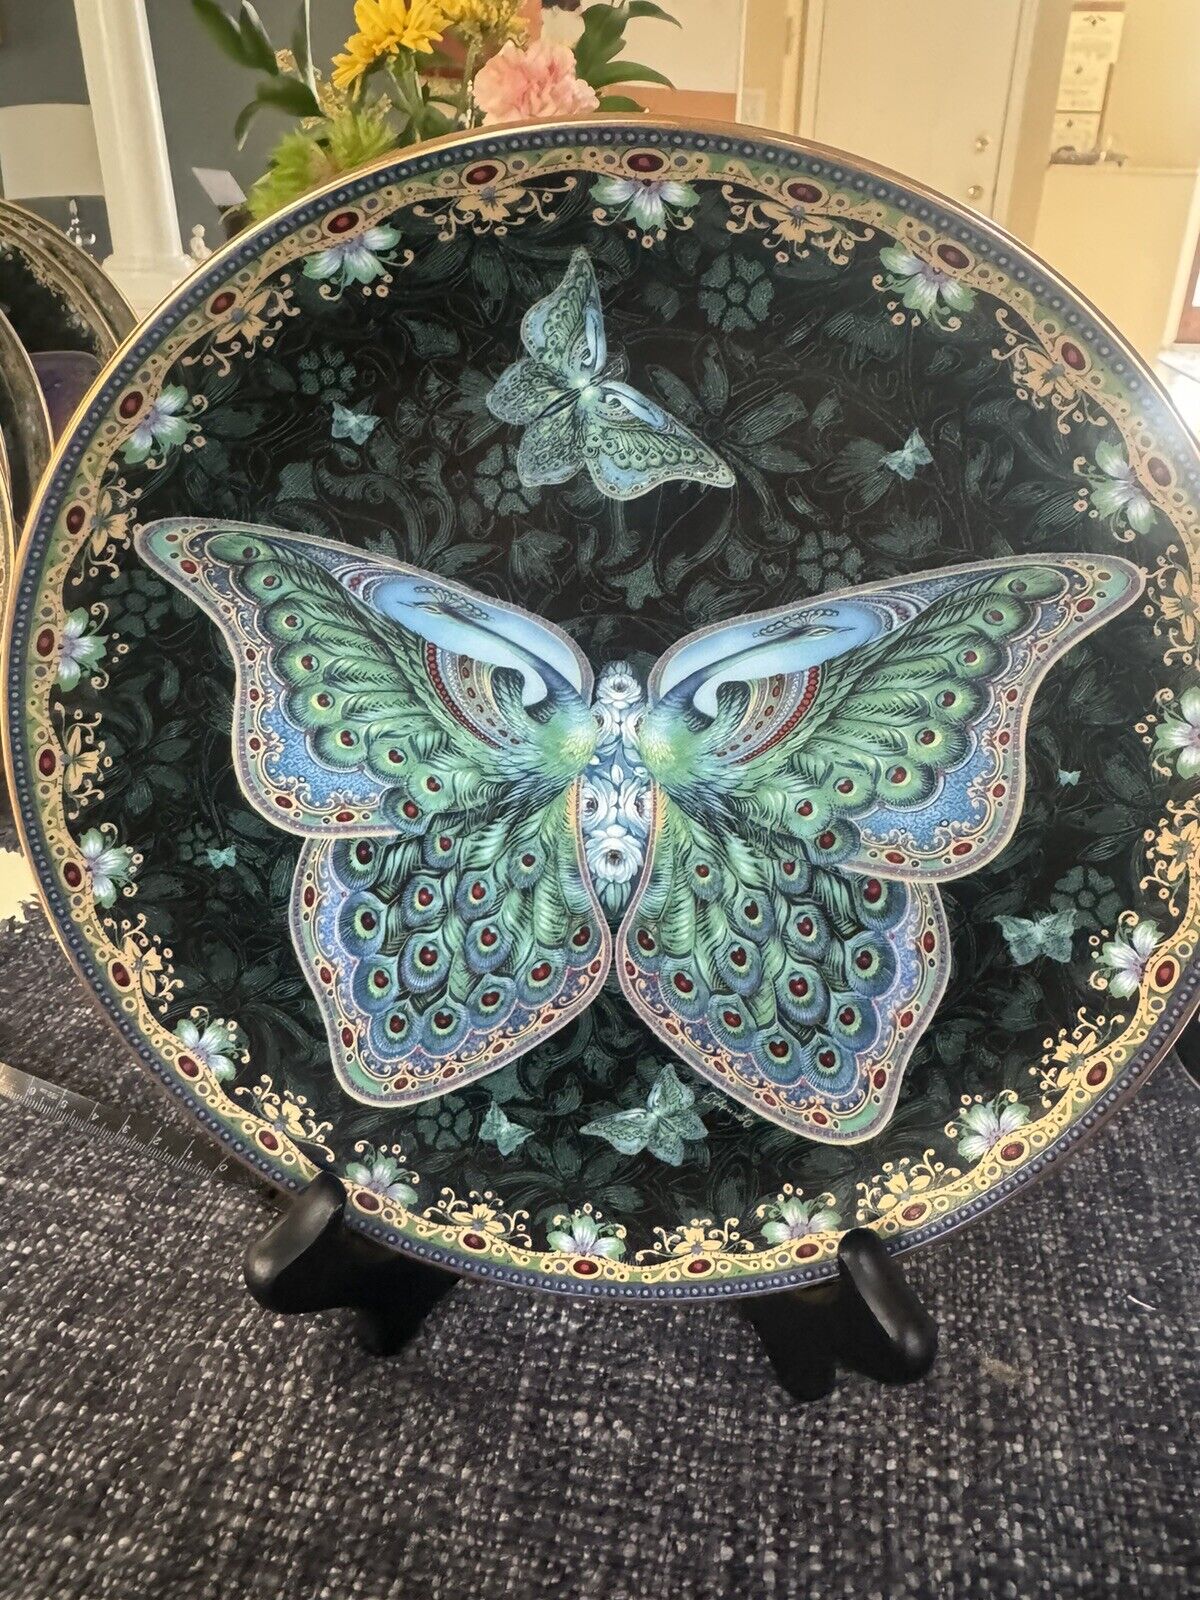 Porcelain Plate Emerald Elegance by Gavrilov Ltd. Ed. #6980A Bradford Exchange